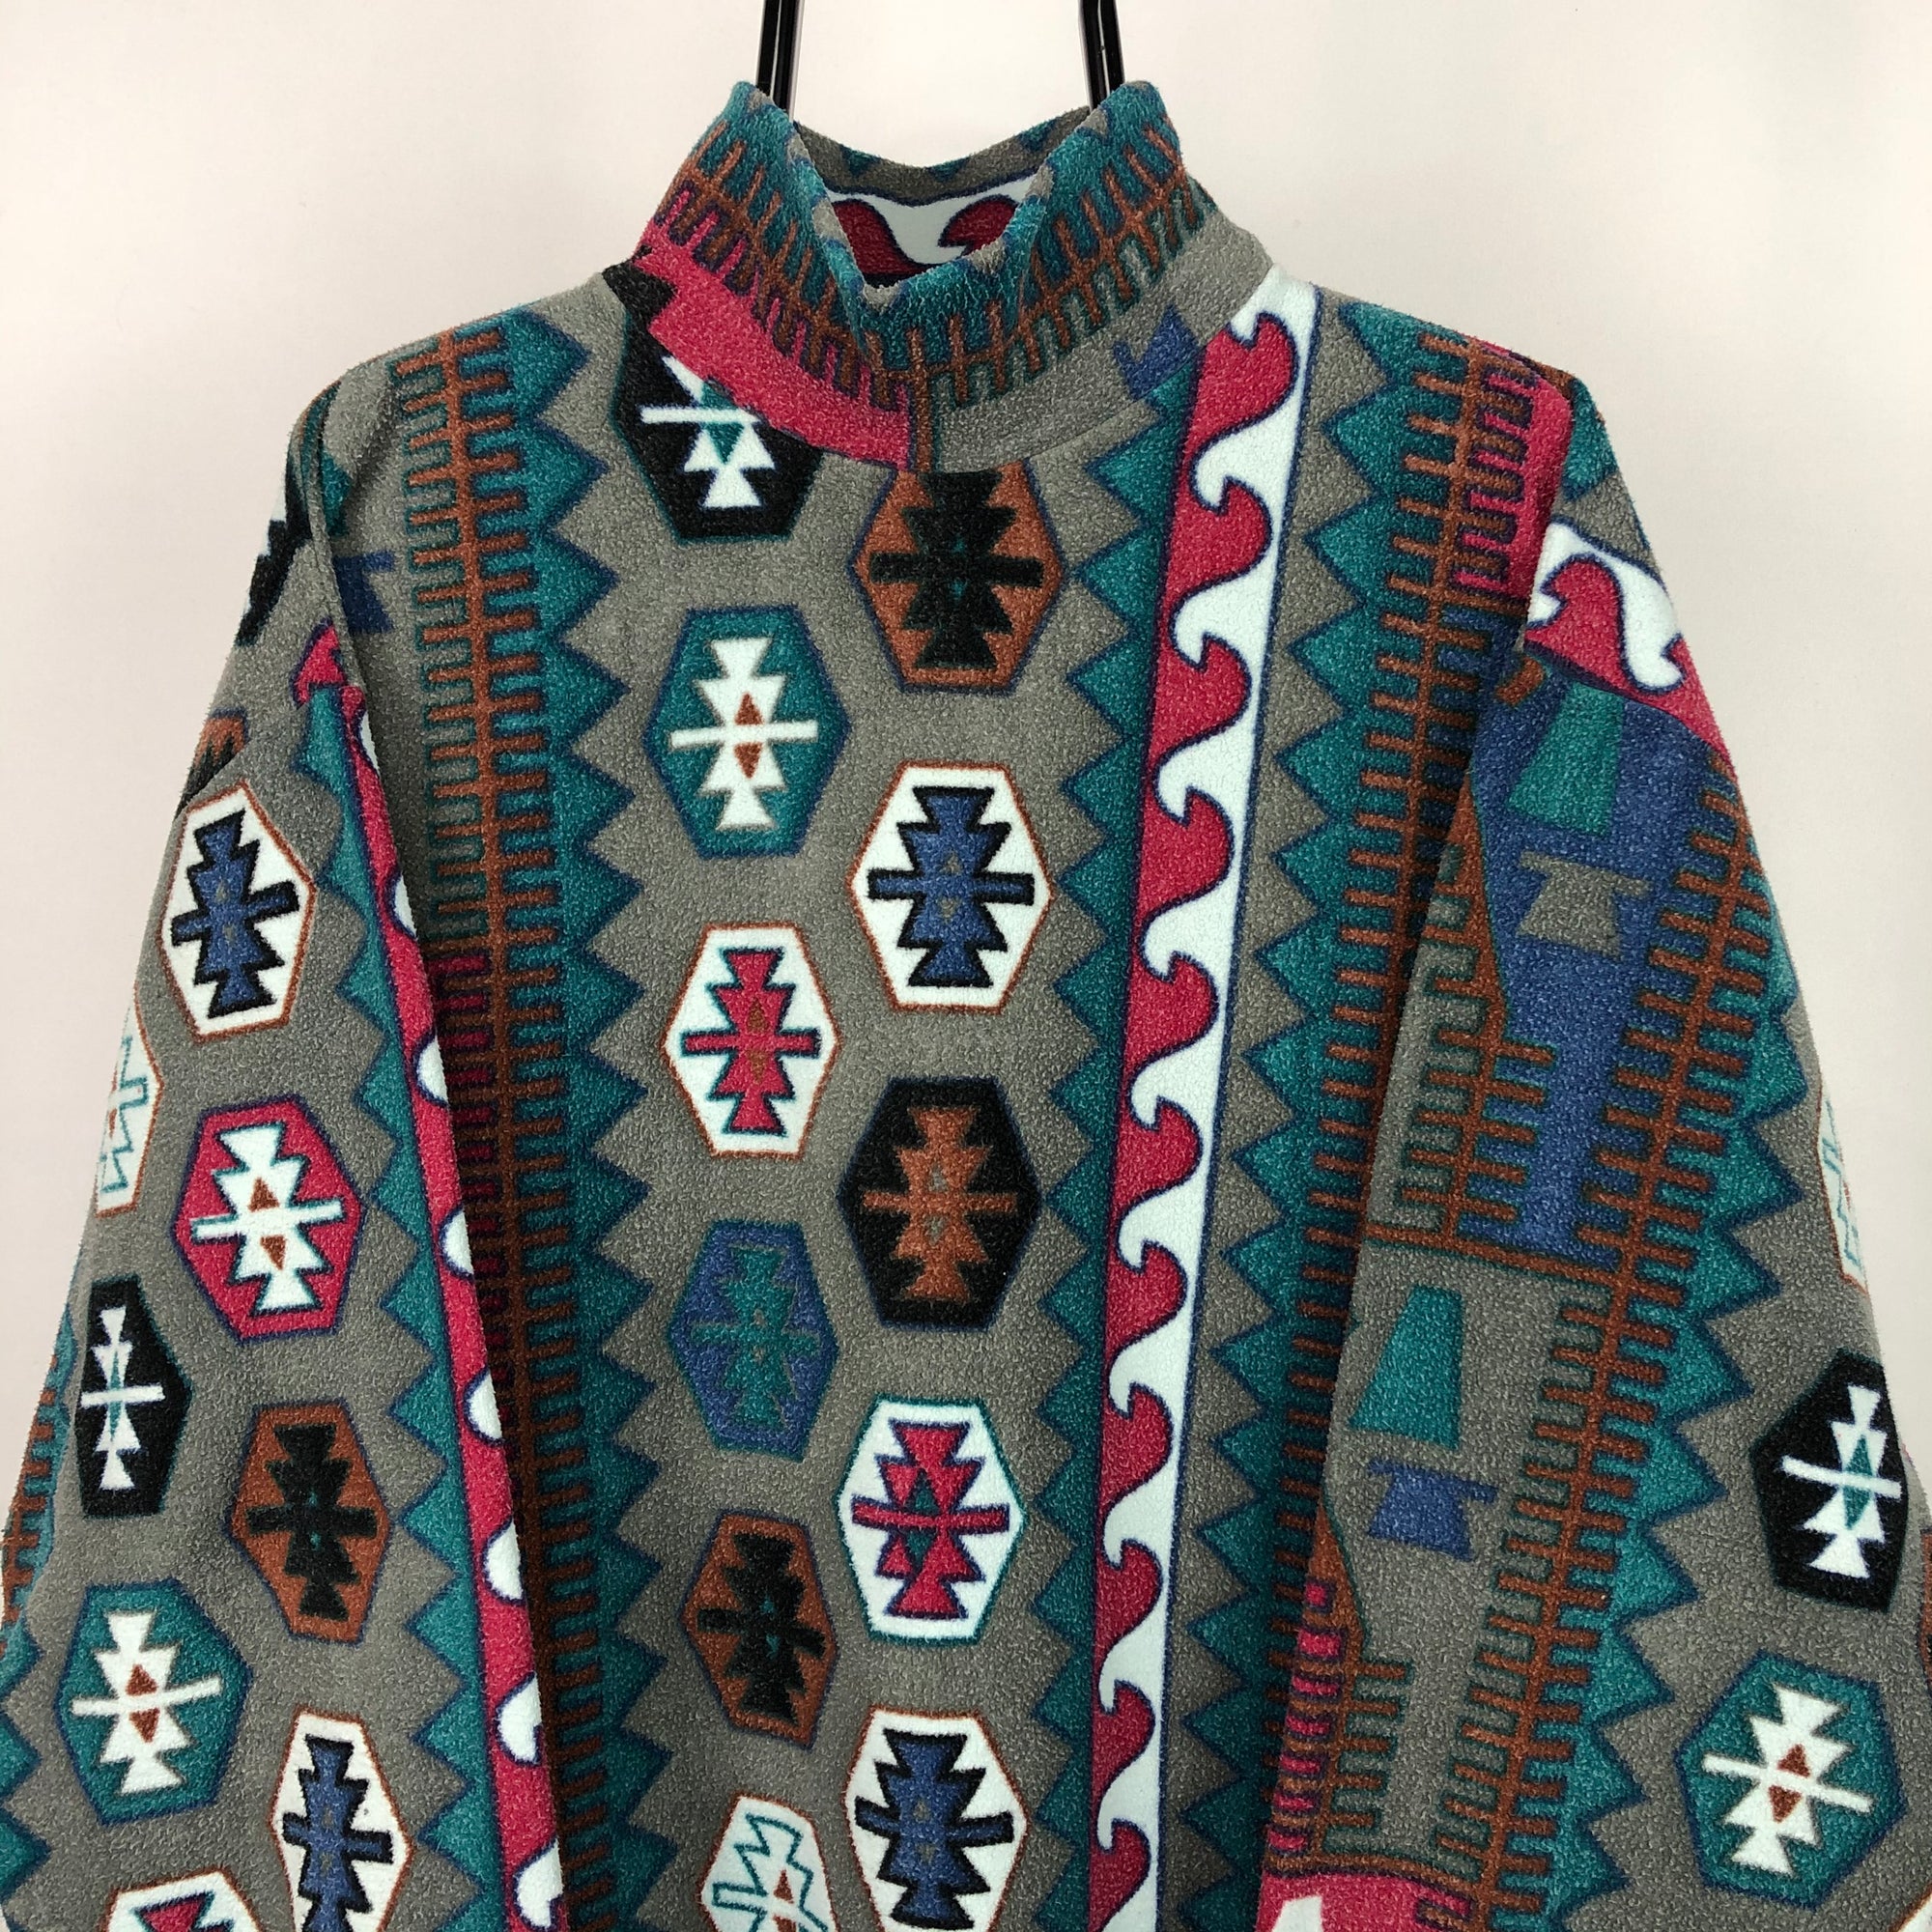 Vintage Aztec Print Fleece Sweatshirt - Men's Large/Women's XL